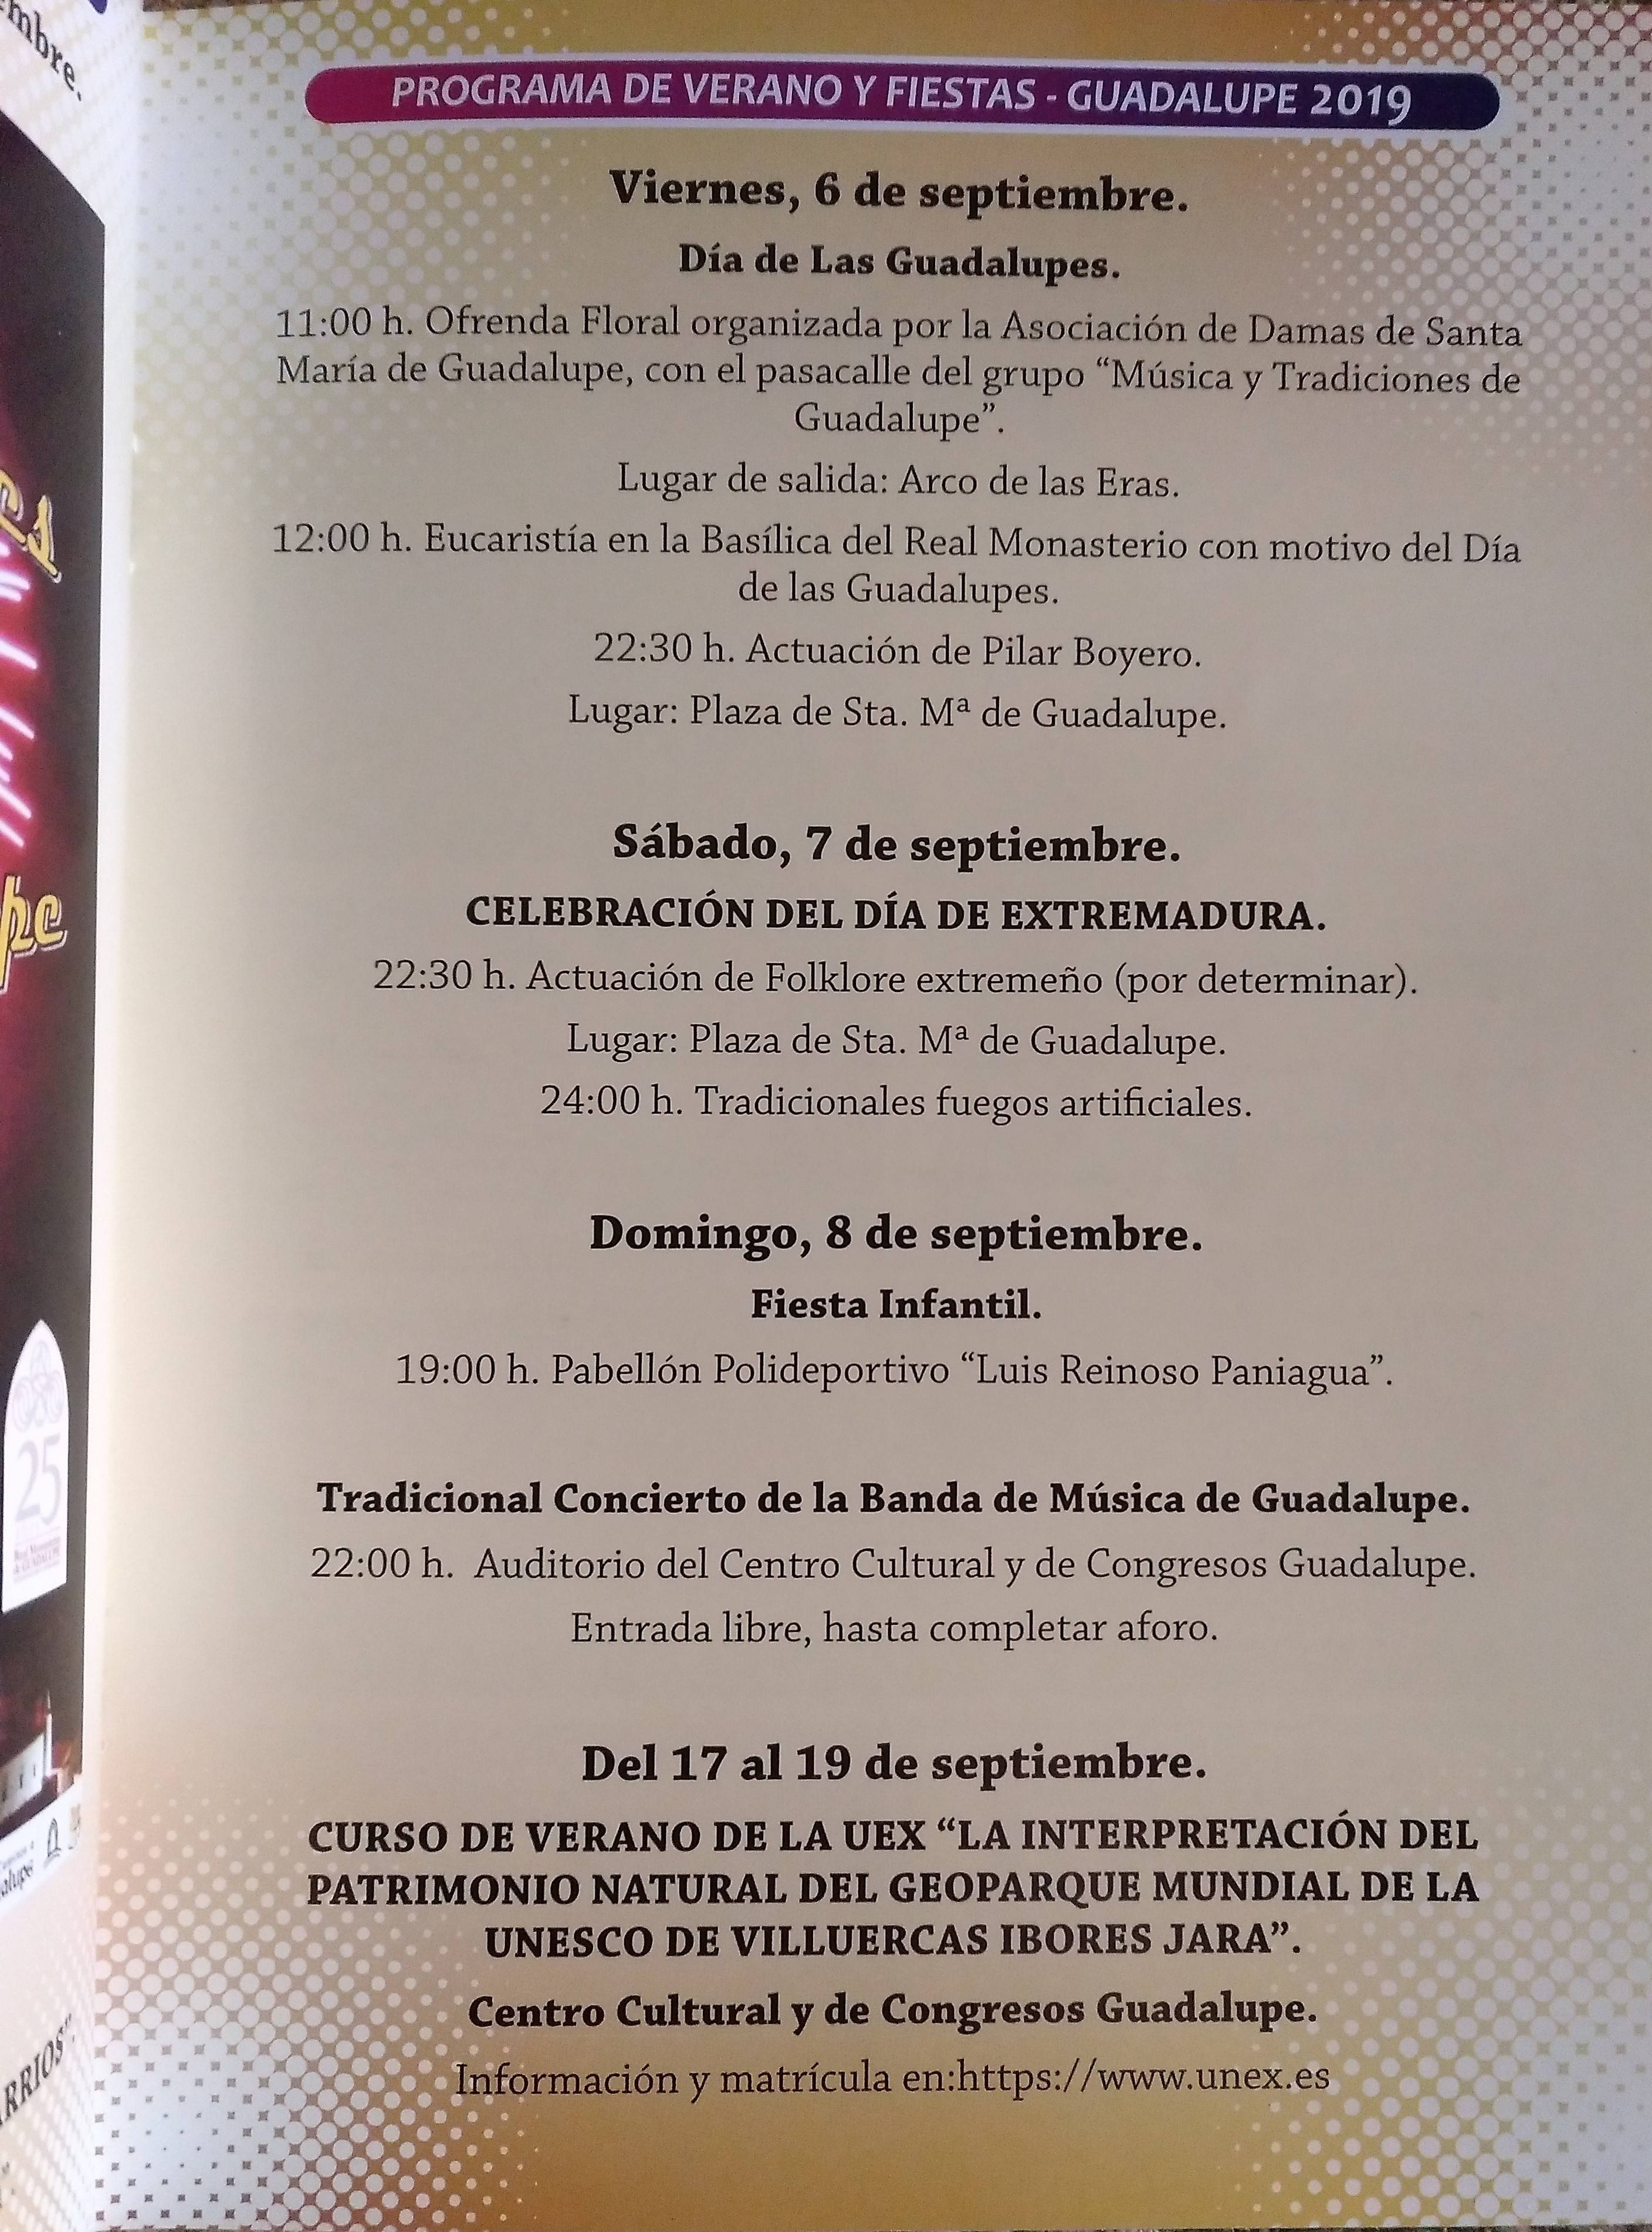 Programa de verano y fiestas rectificado 2019 - Guadalupe (Cáceres)